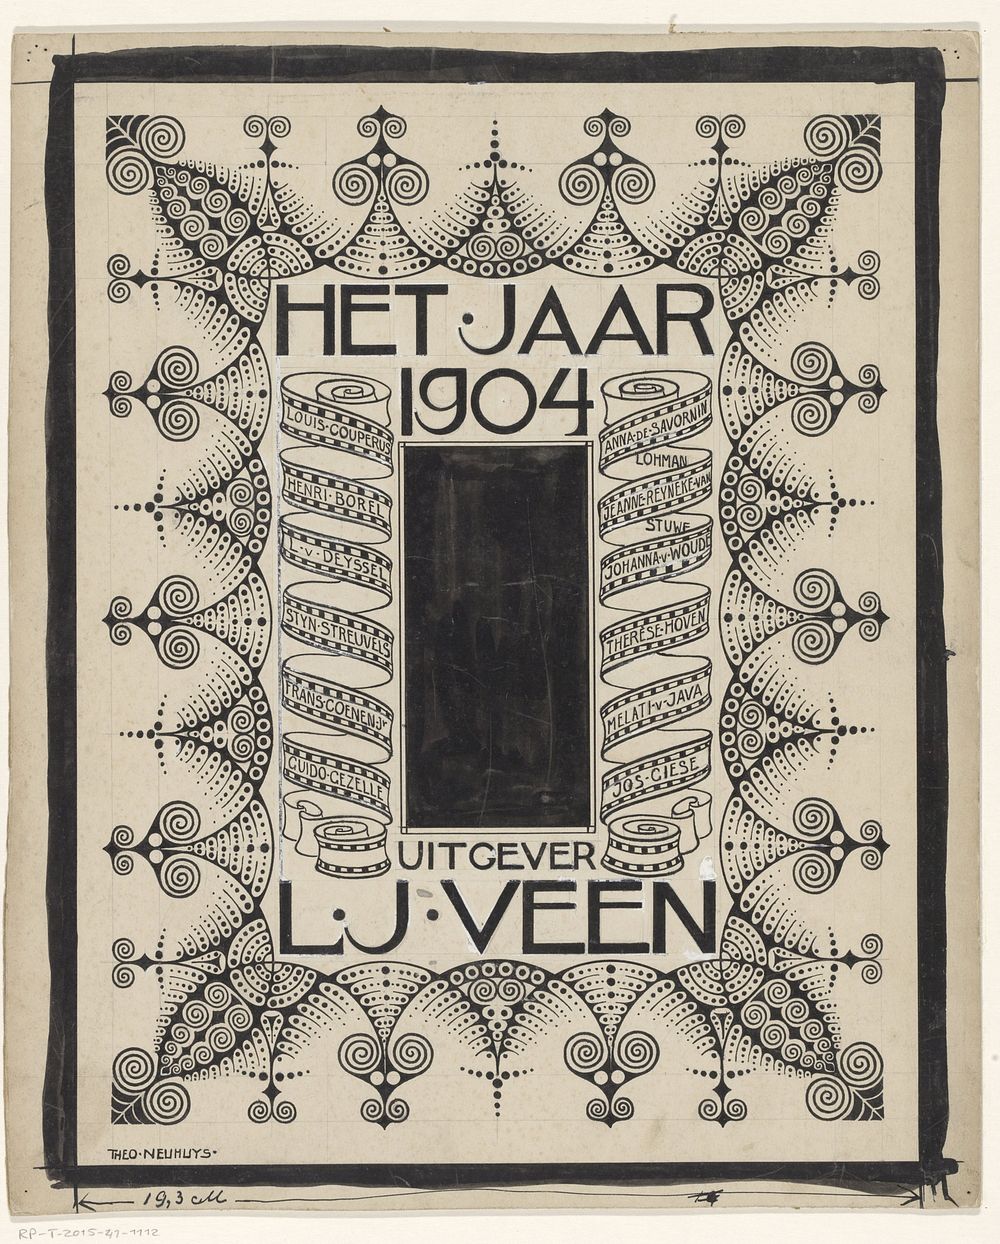 Omslagontwerp voor: Het jaar 1904 (in or before 1904) by Theo Neuhuys